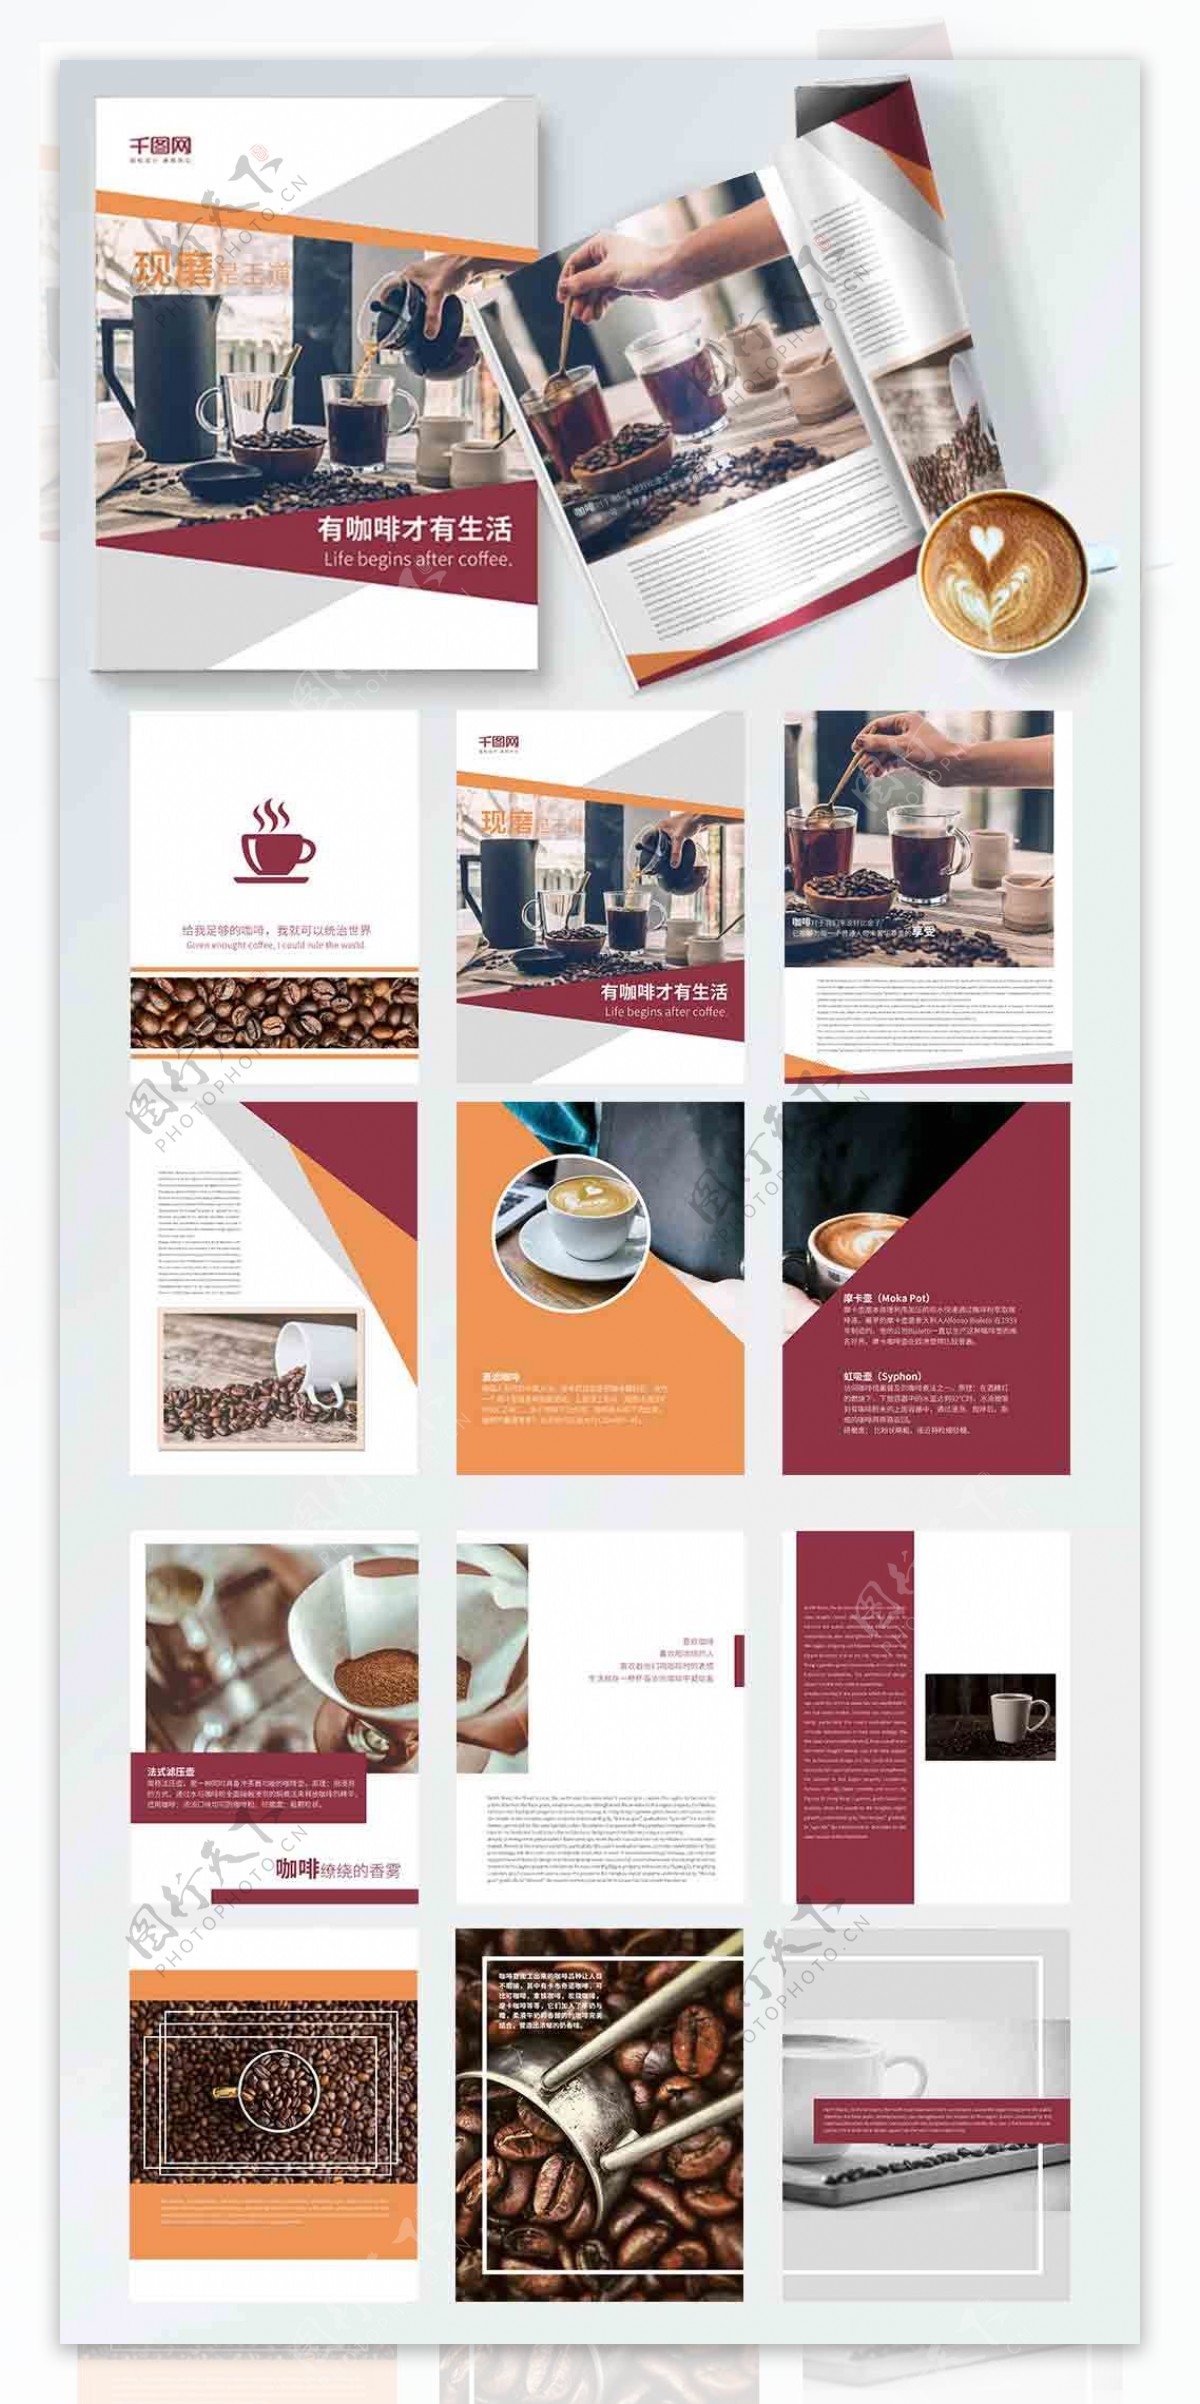 餐饮咖啡创意宣传画册设计PSD模板